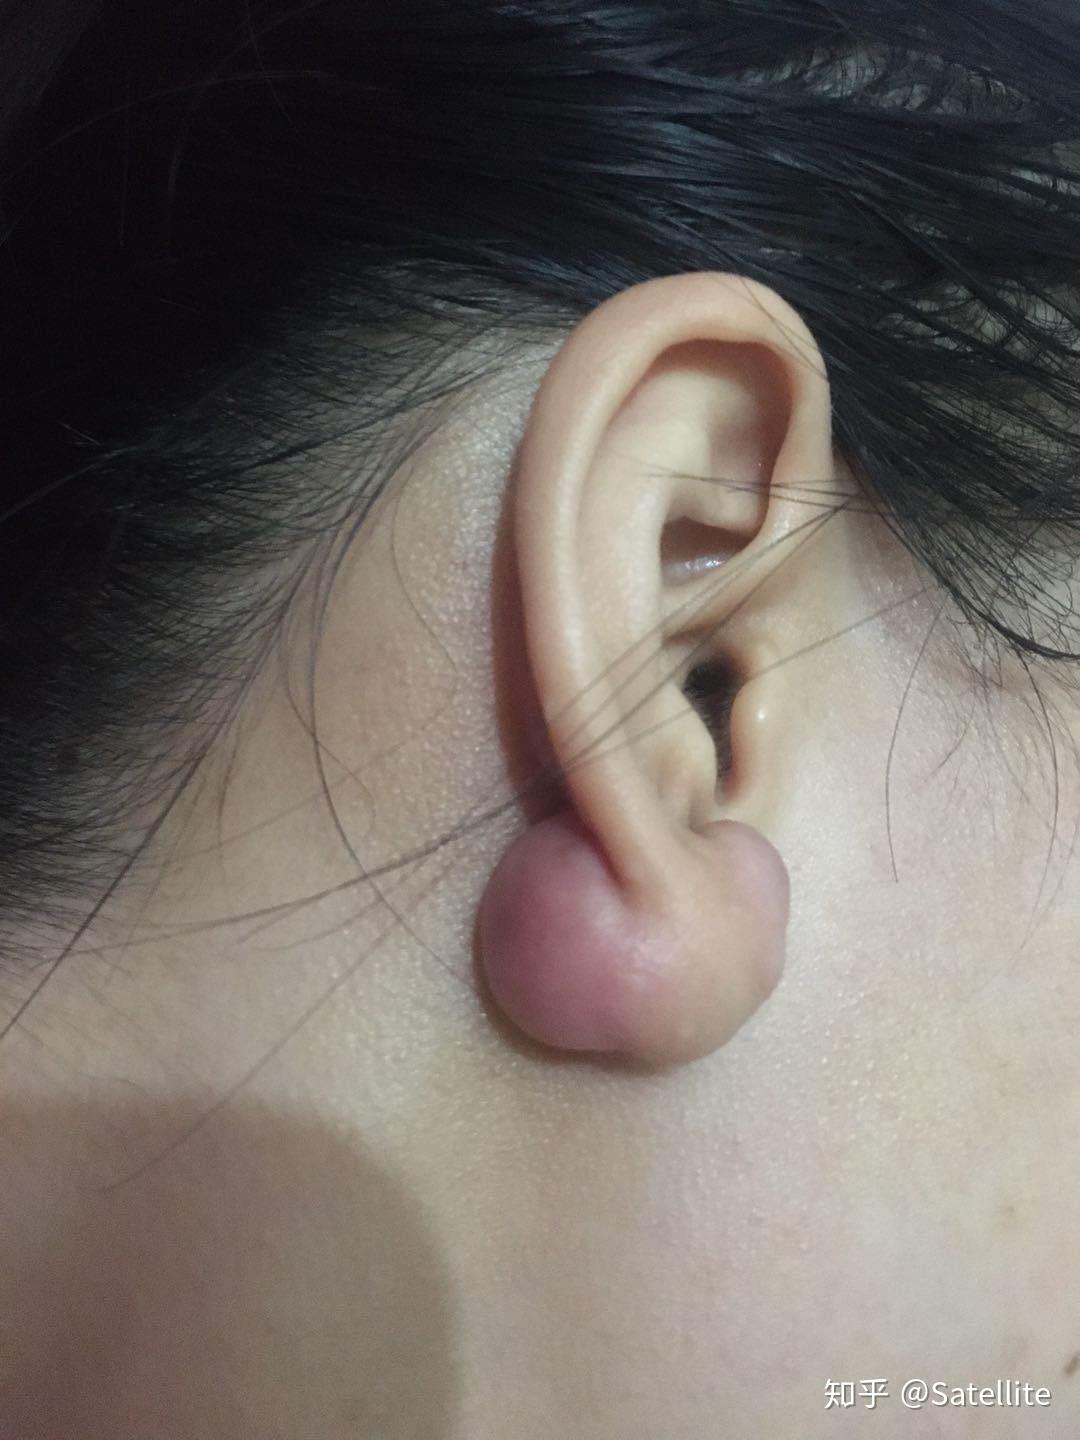 怎么判断耳洞疤痕疙瘩图片